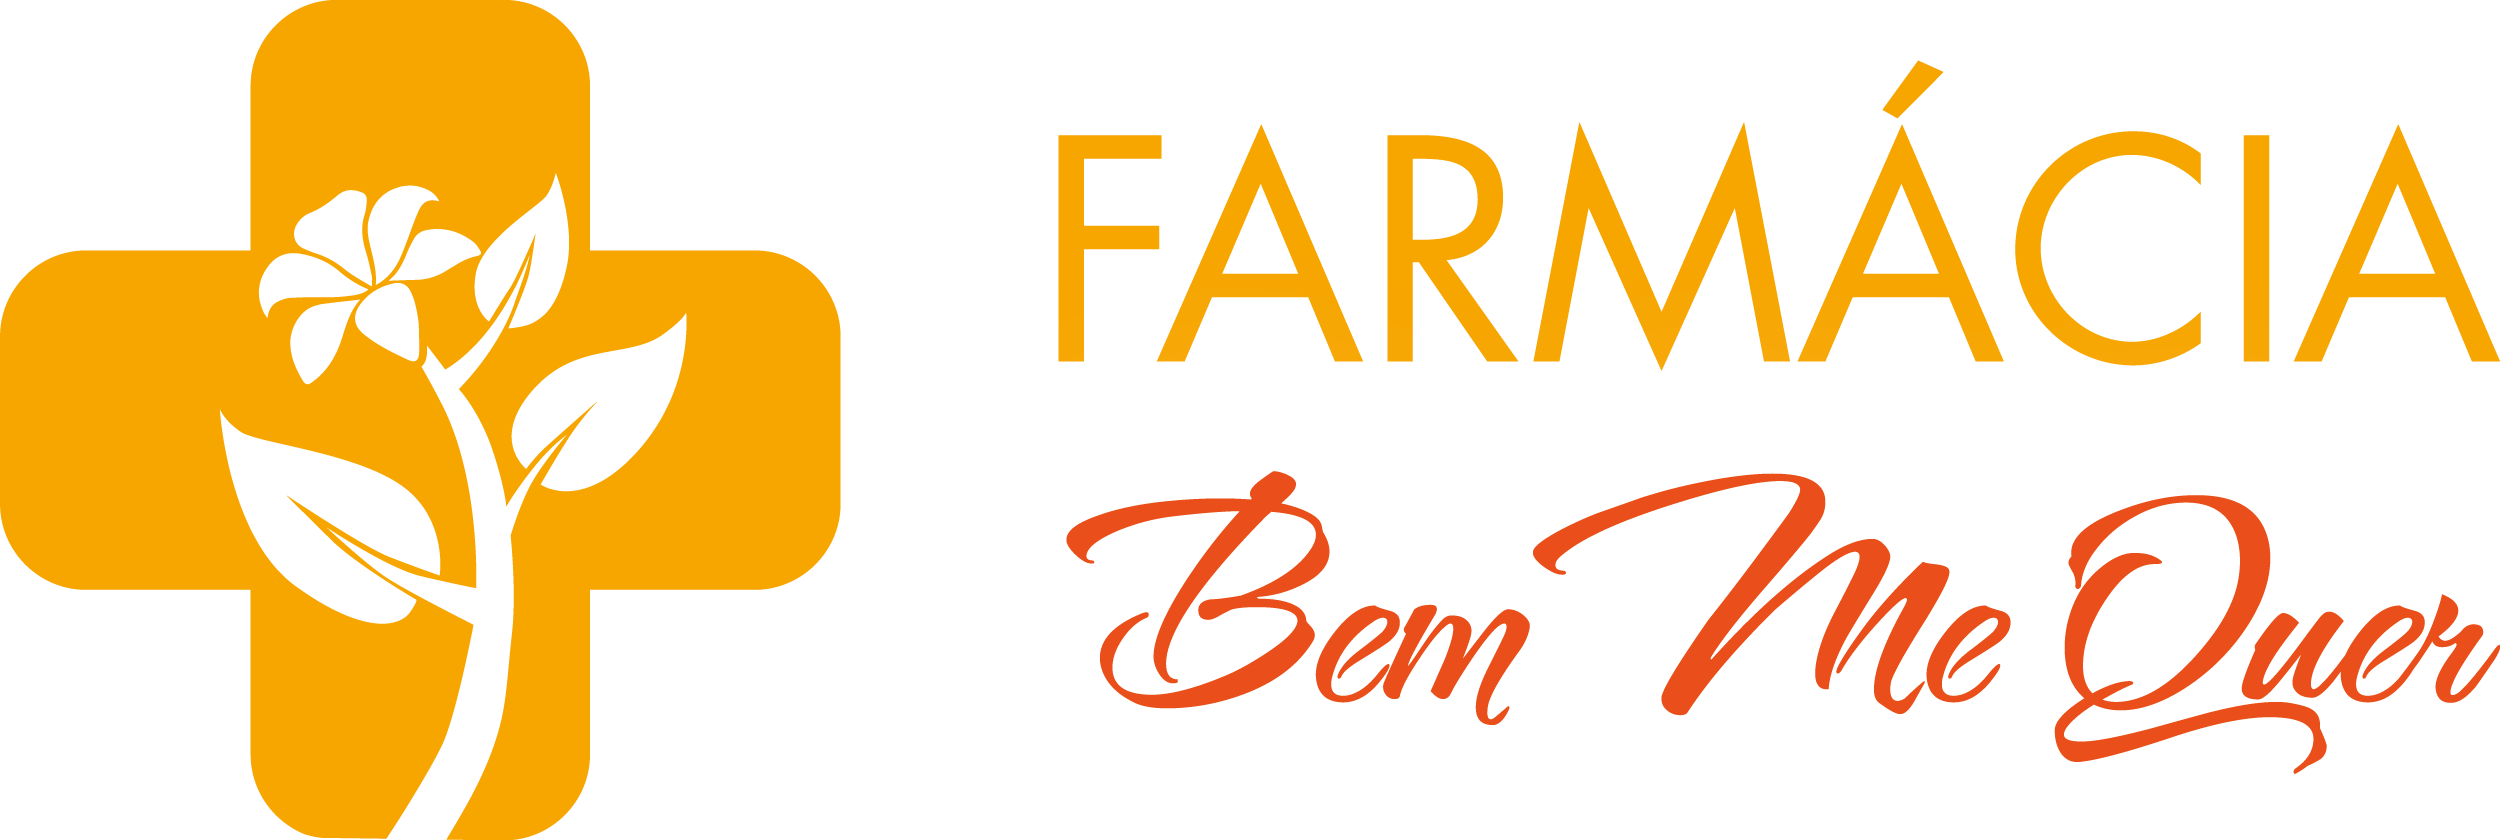 Farm_Bem_Me_Quer-02